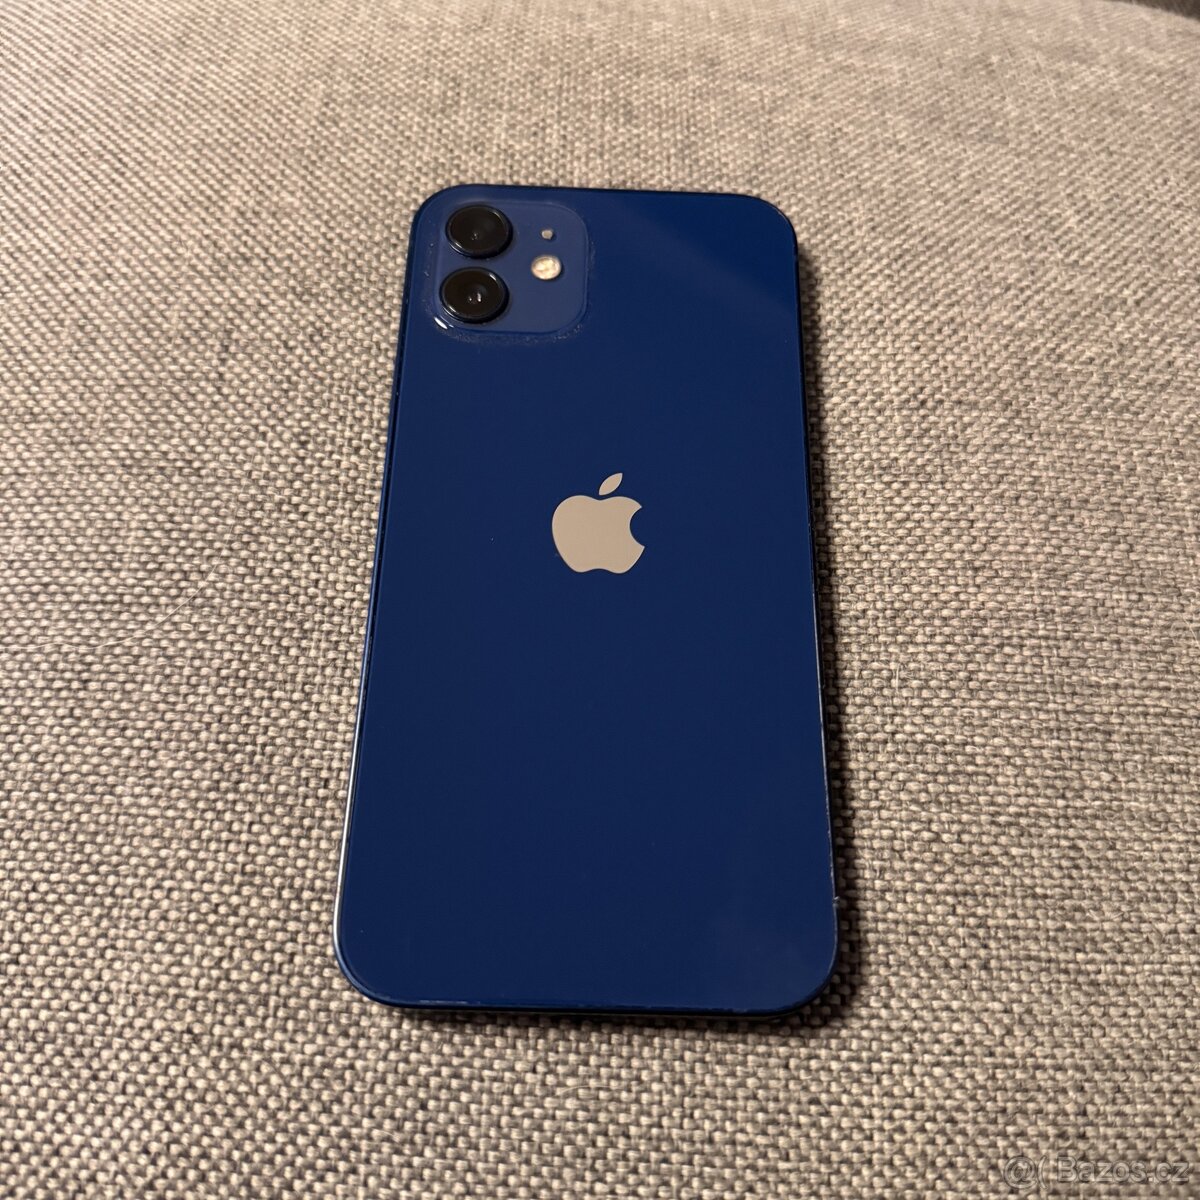 iPhone 12 64GB modrý, pěkný stav, 12 měsíců záruka